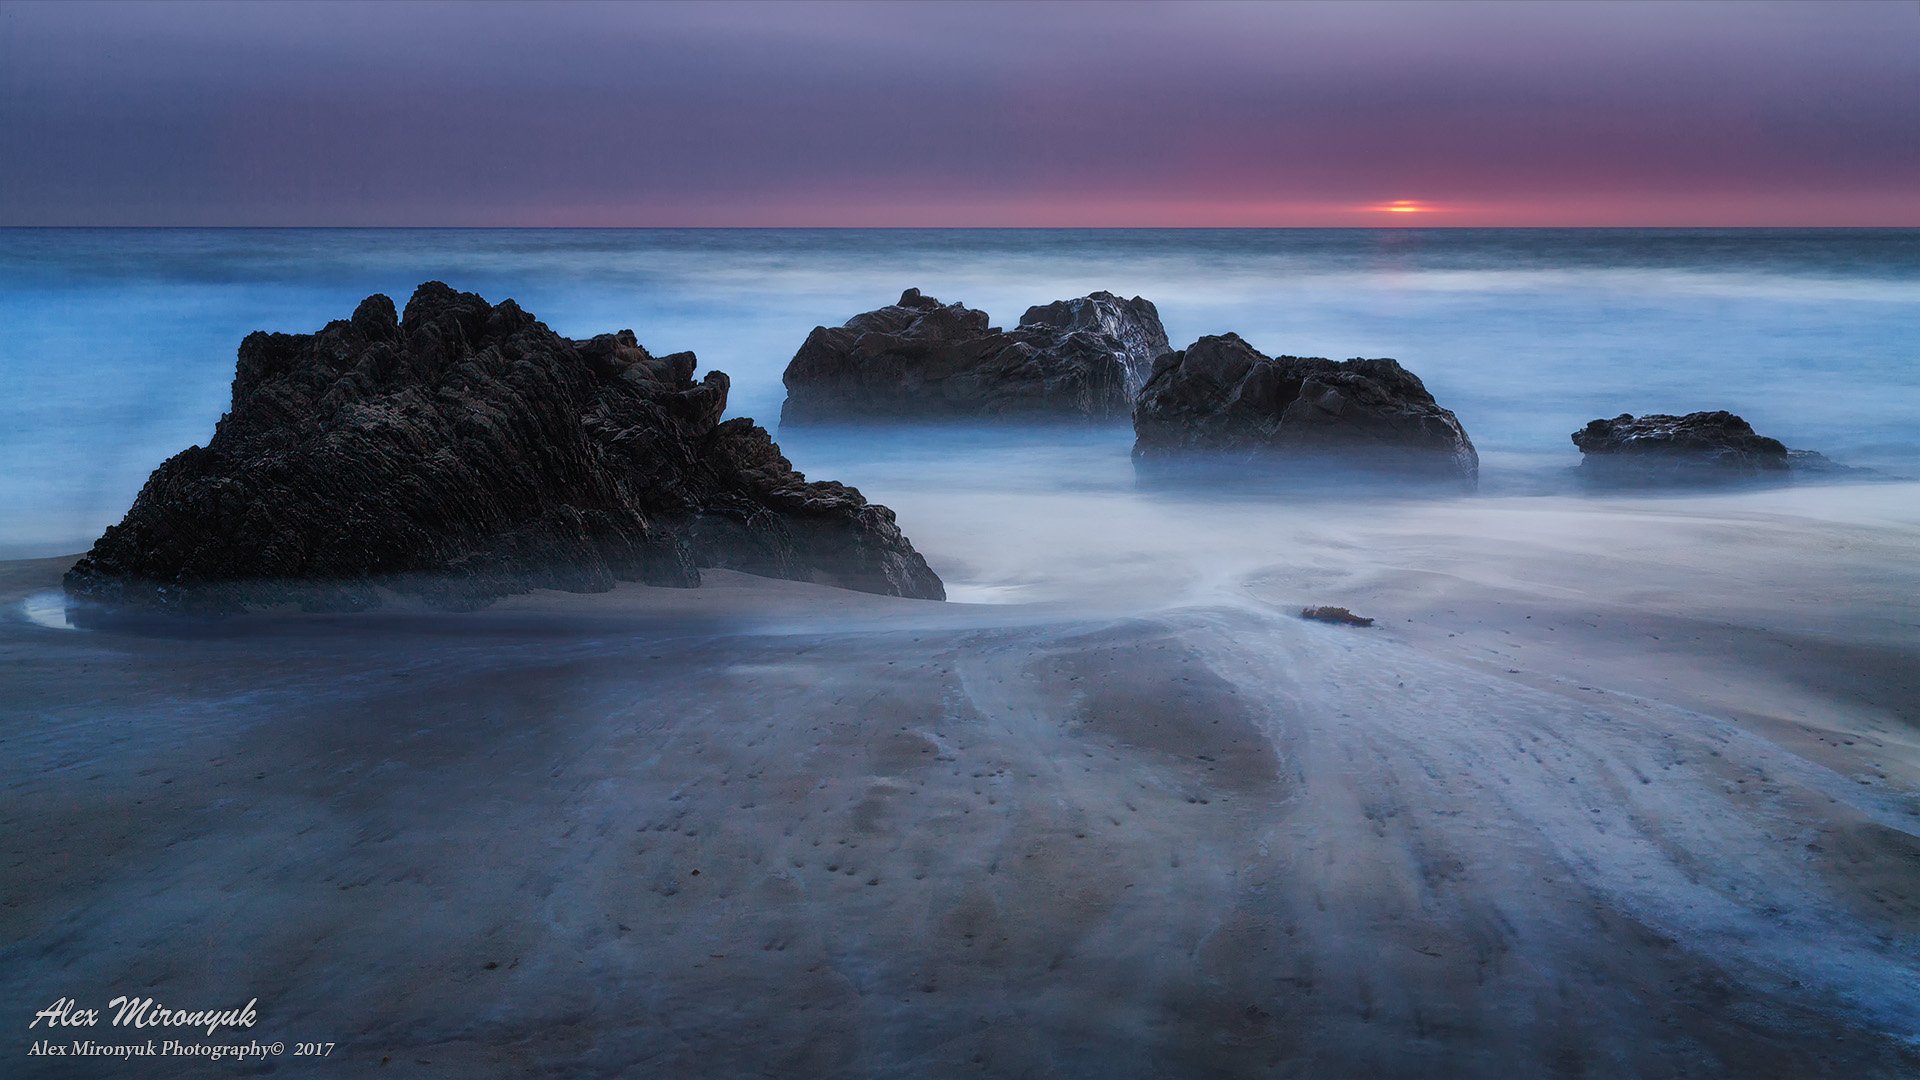 море, океан, тихий, волны, прибой, скала, камень, закат, солнце, тучи, панорама,, Alex Mironyuk